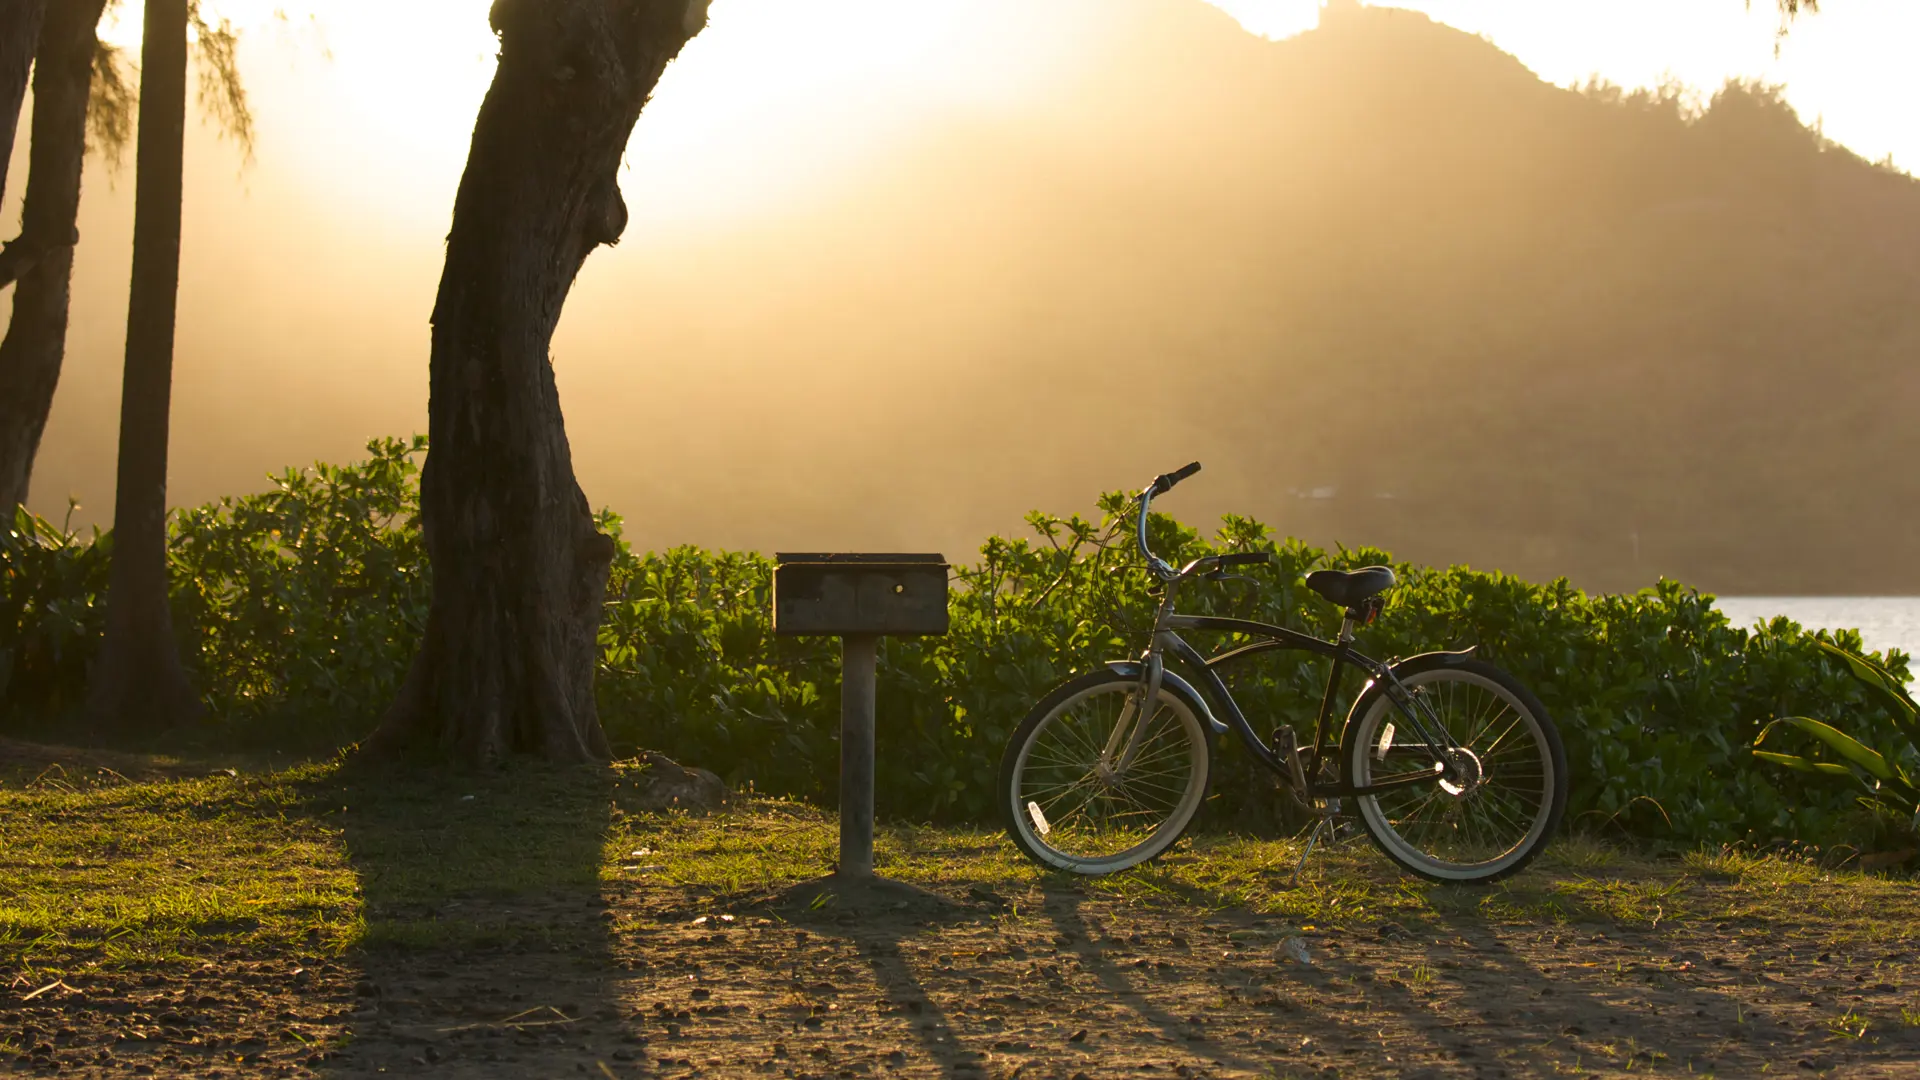 Sunset on Hanalei Bay with Backlit Bike and BBQ. - Billede.jpg